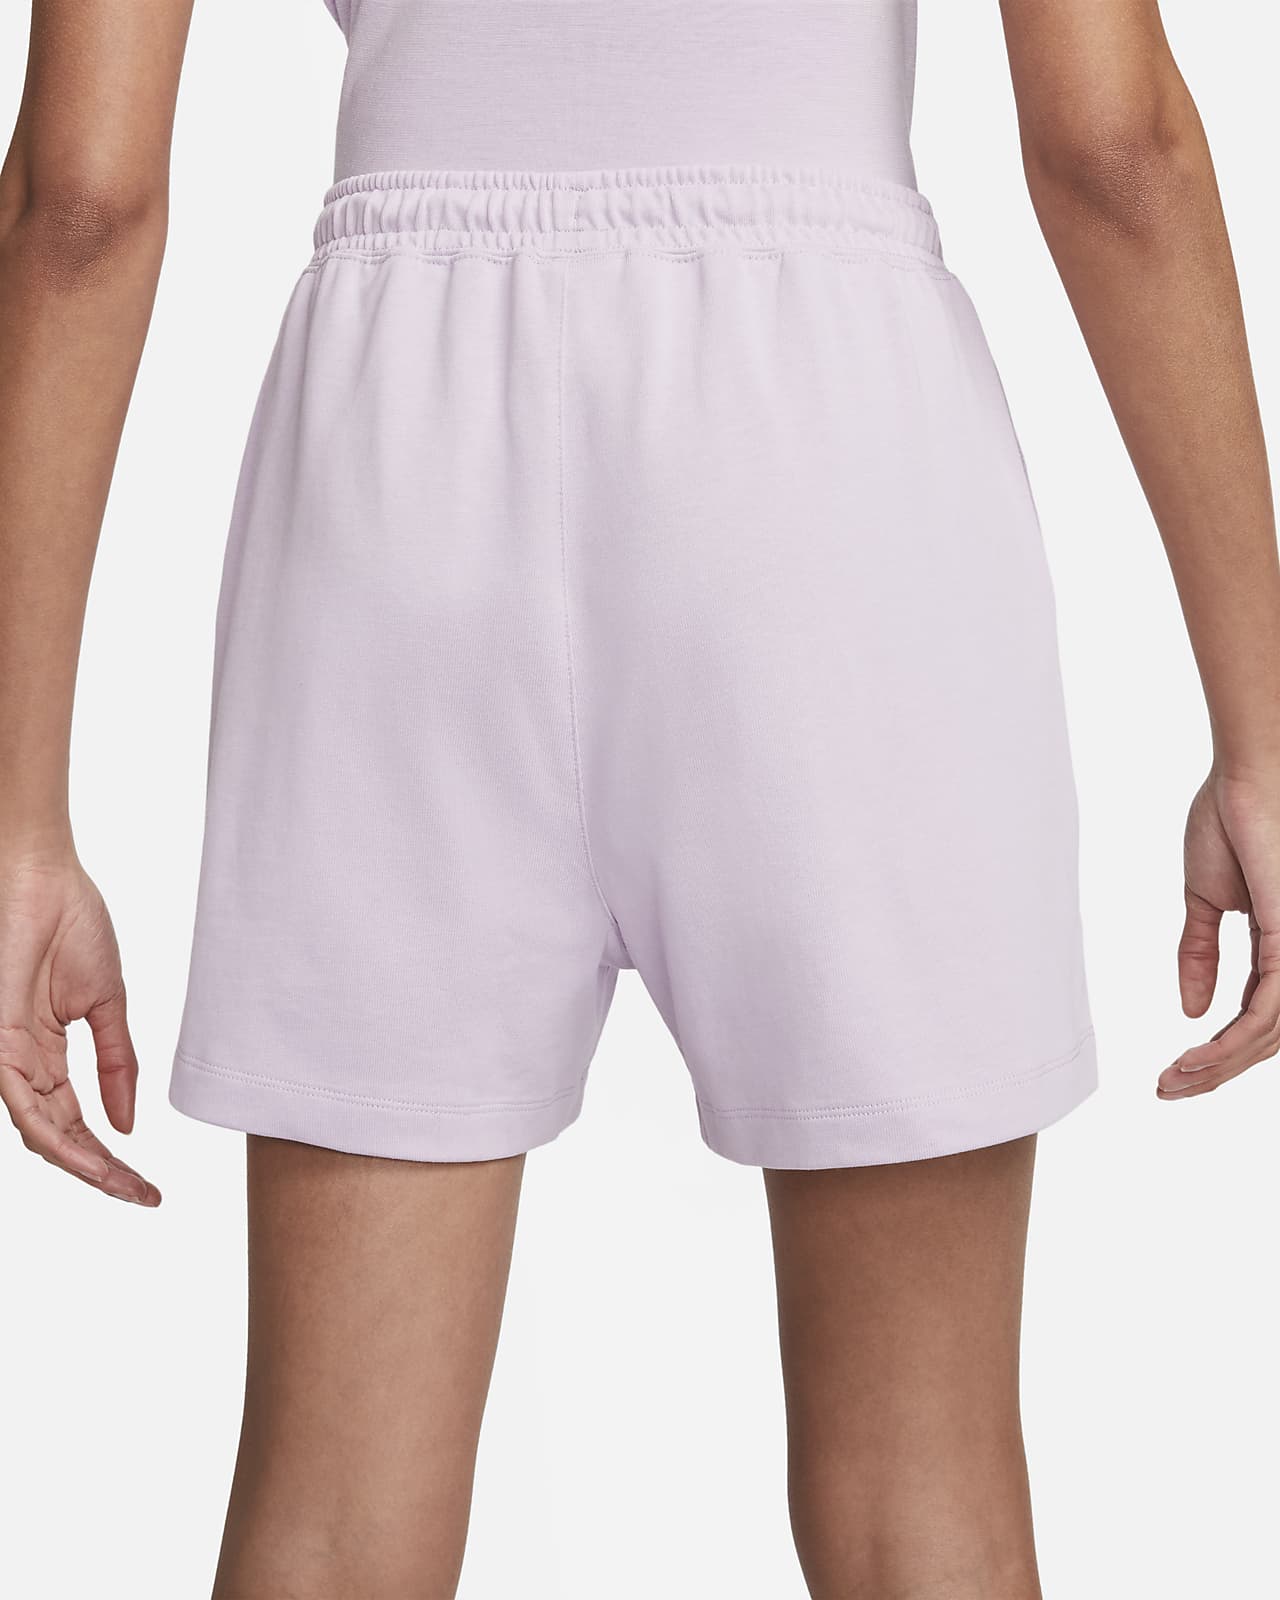 Nike Sportswear Women's Jersey Shorts.